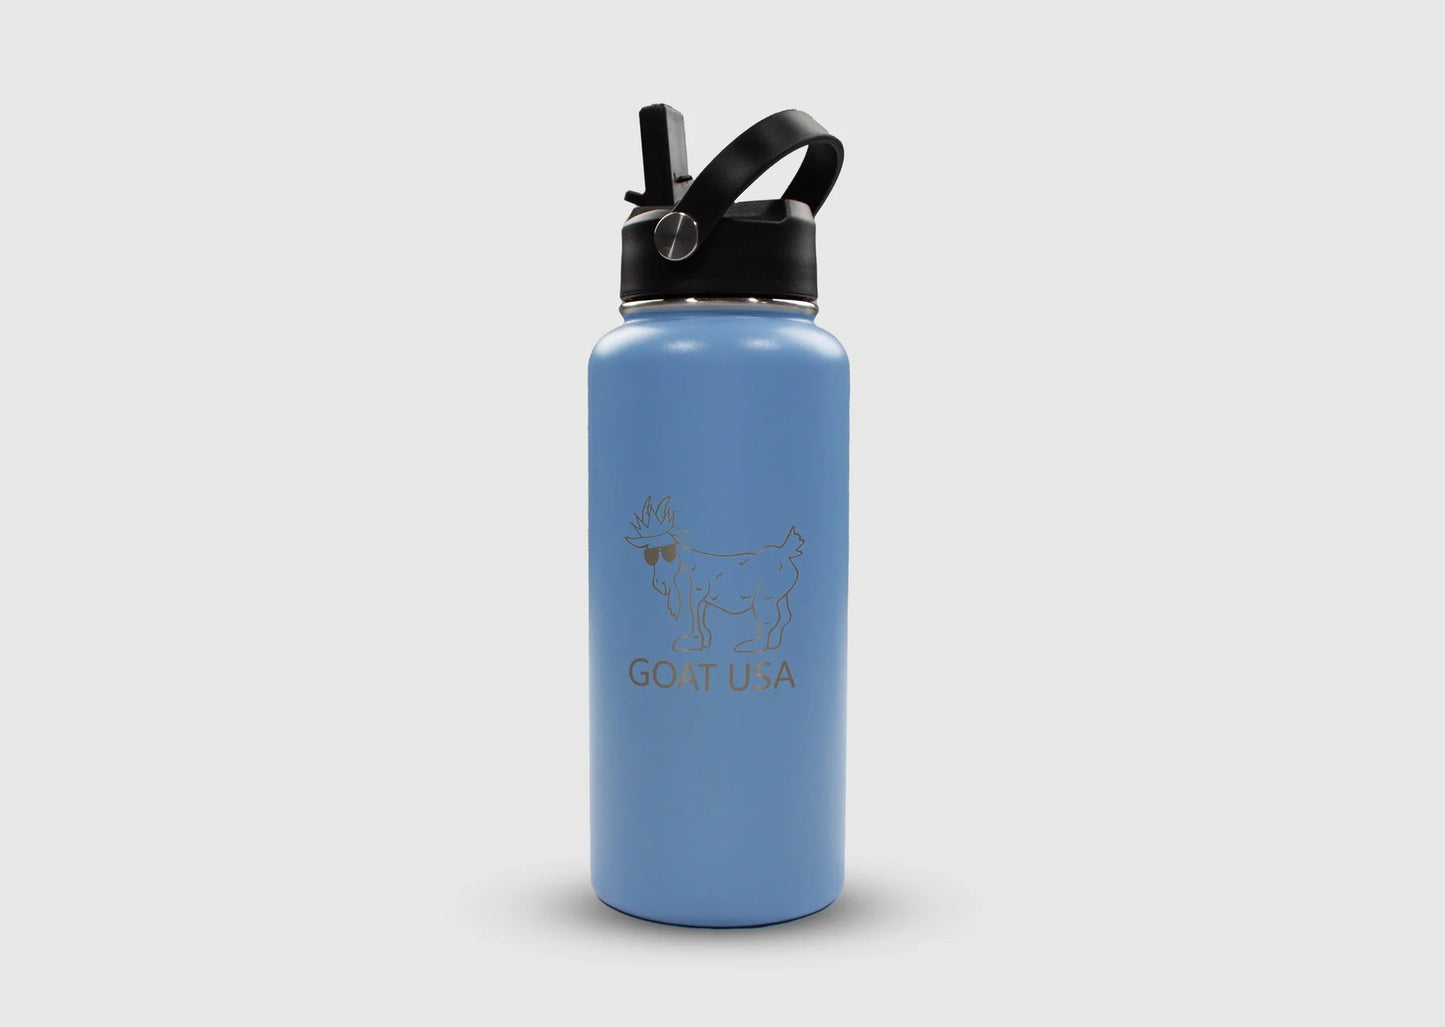 GOAT USA OG Water Bottle | Carolina Blue